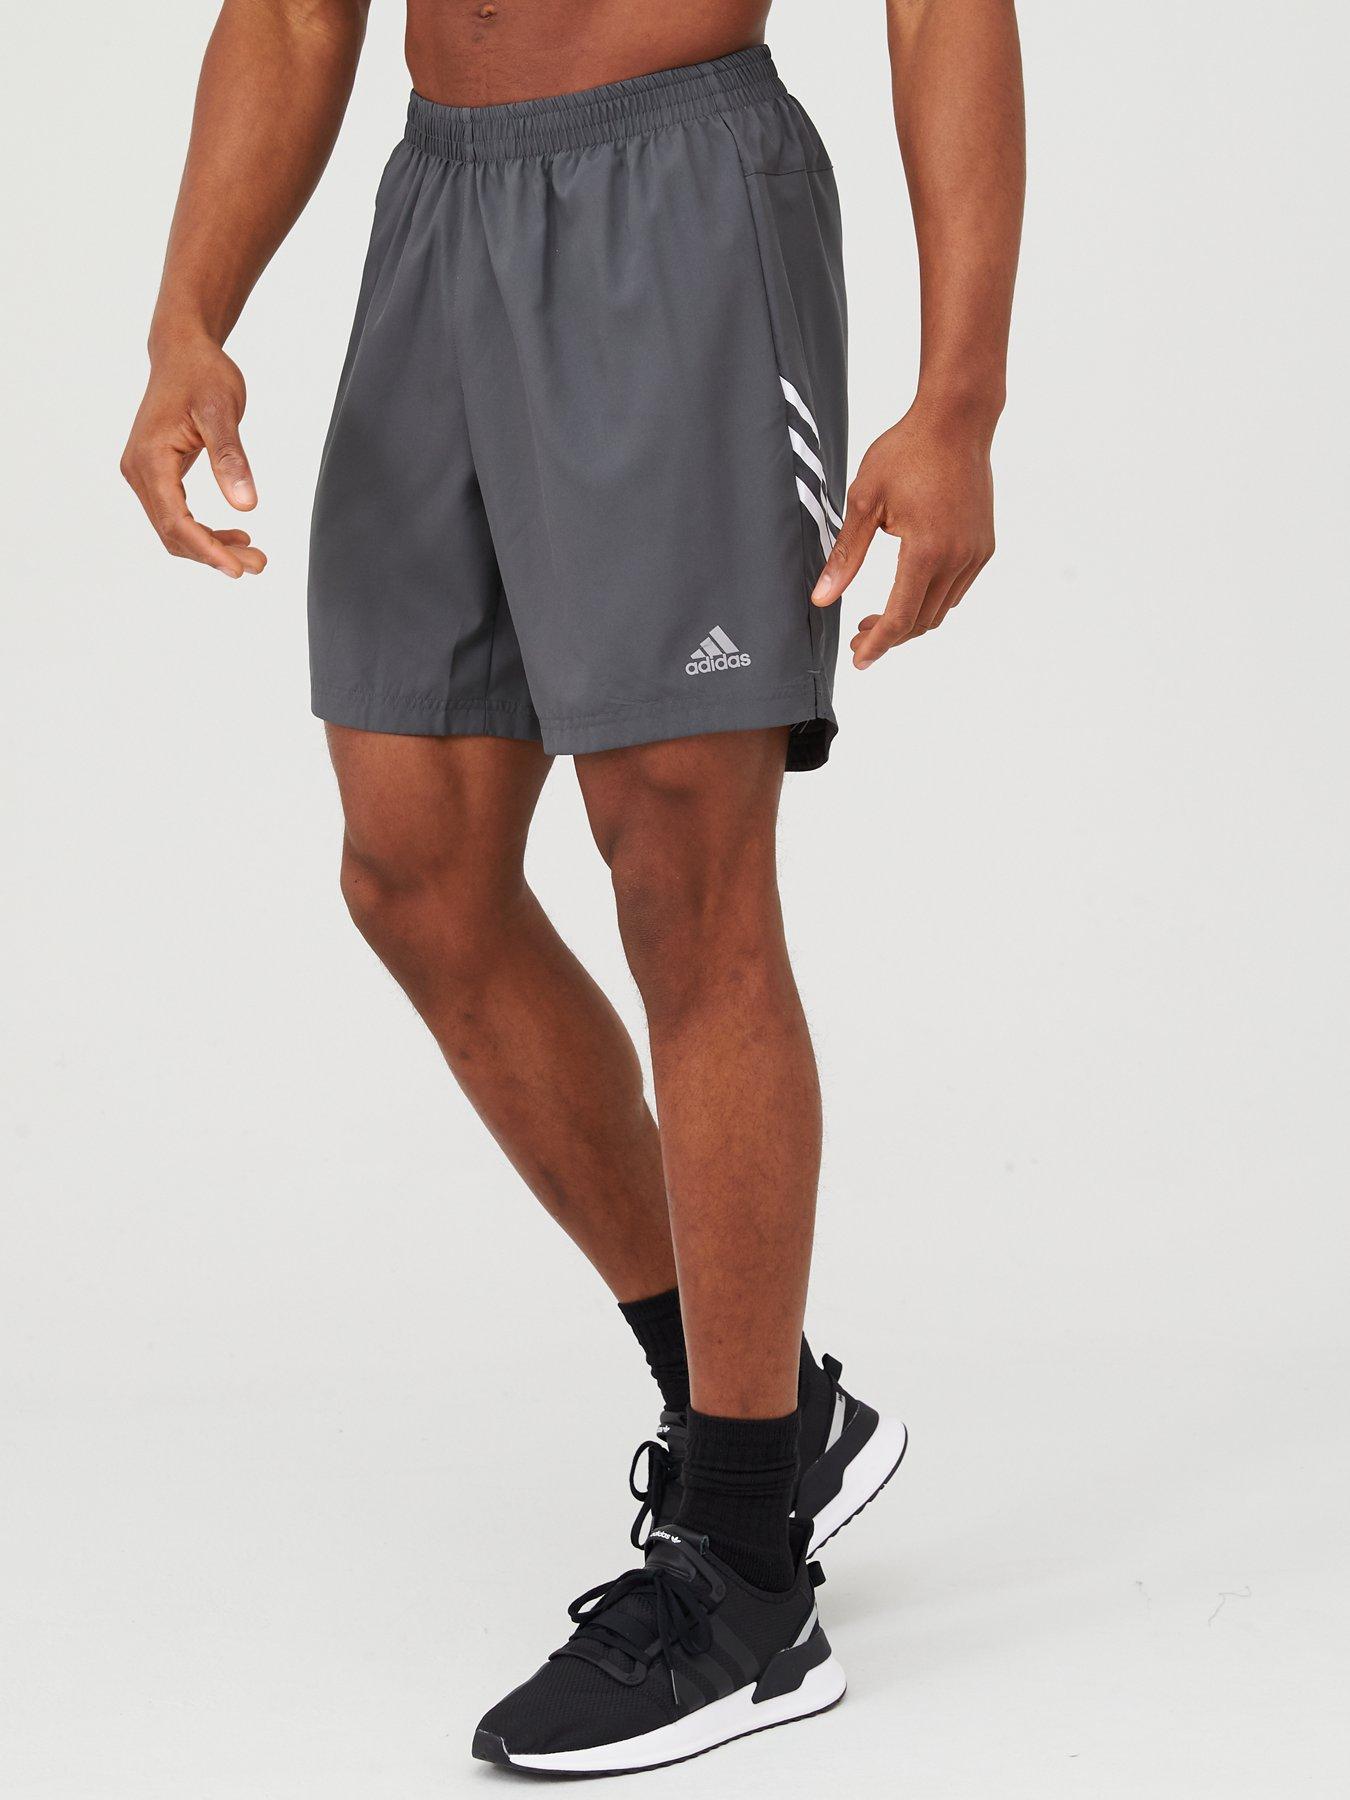 adidas 3 stripe running shorts